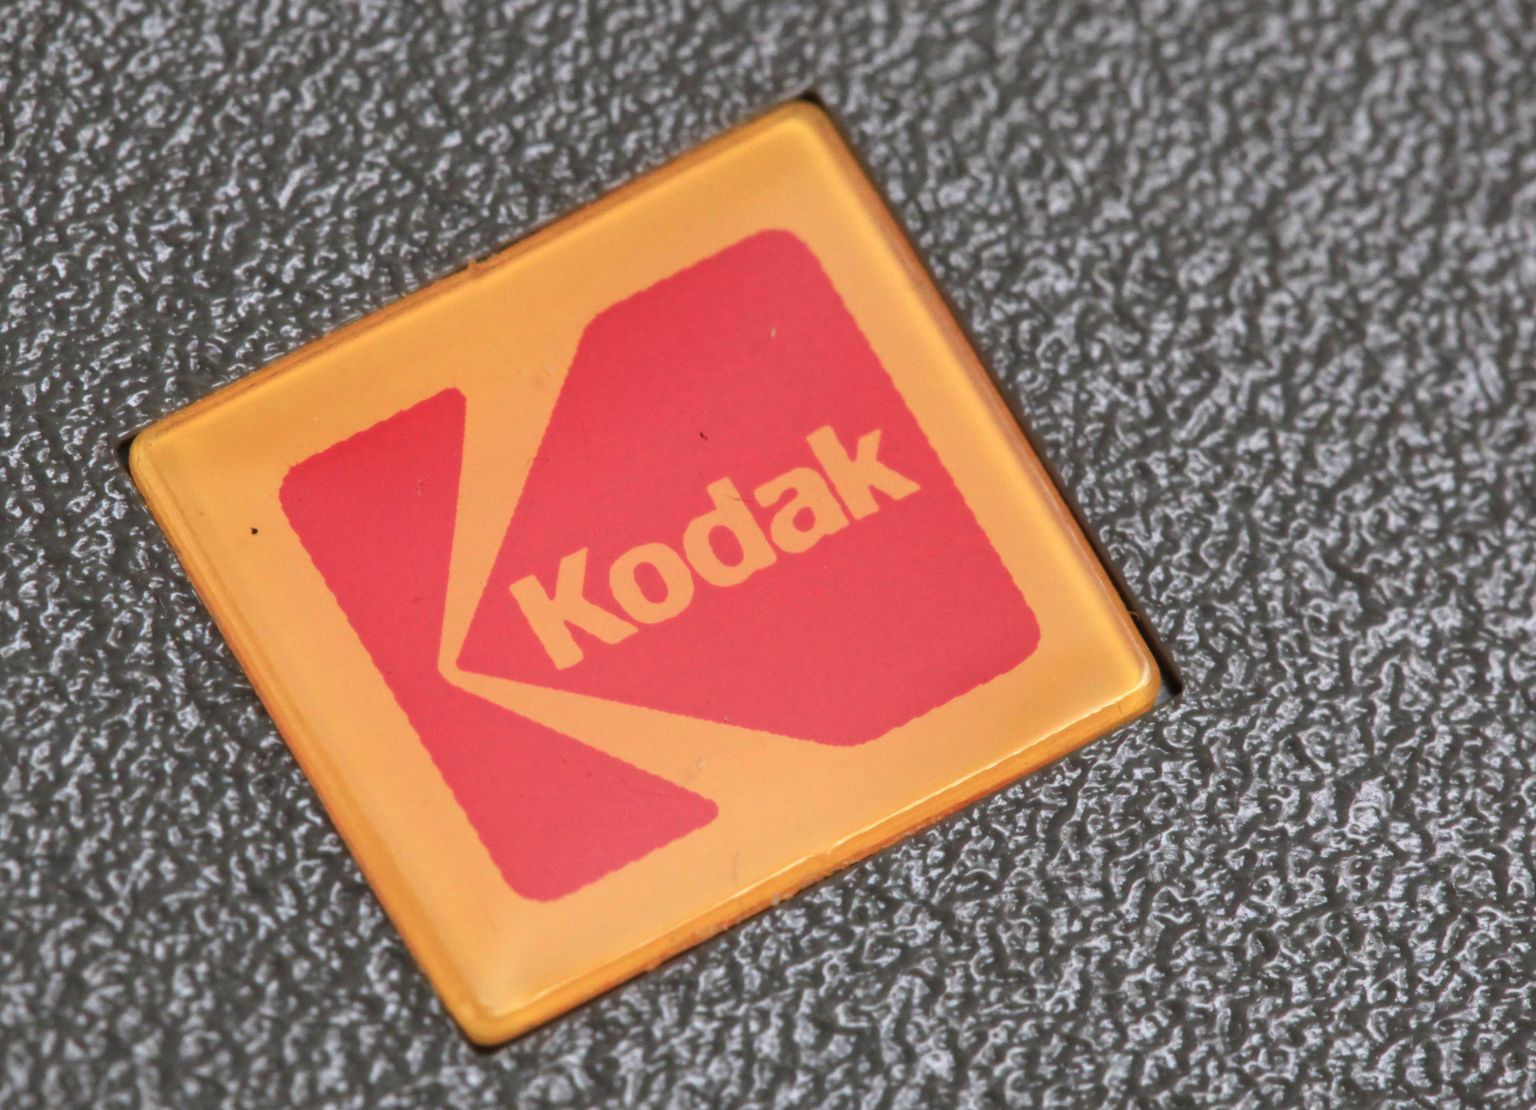 Kodaki logo.